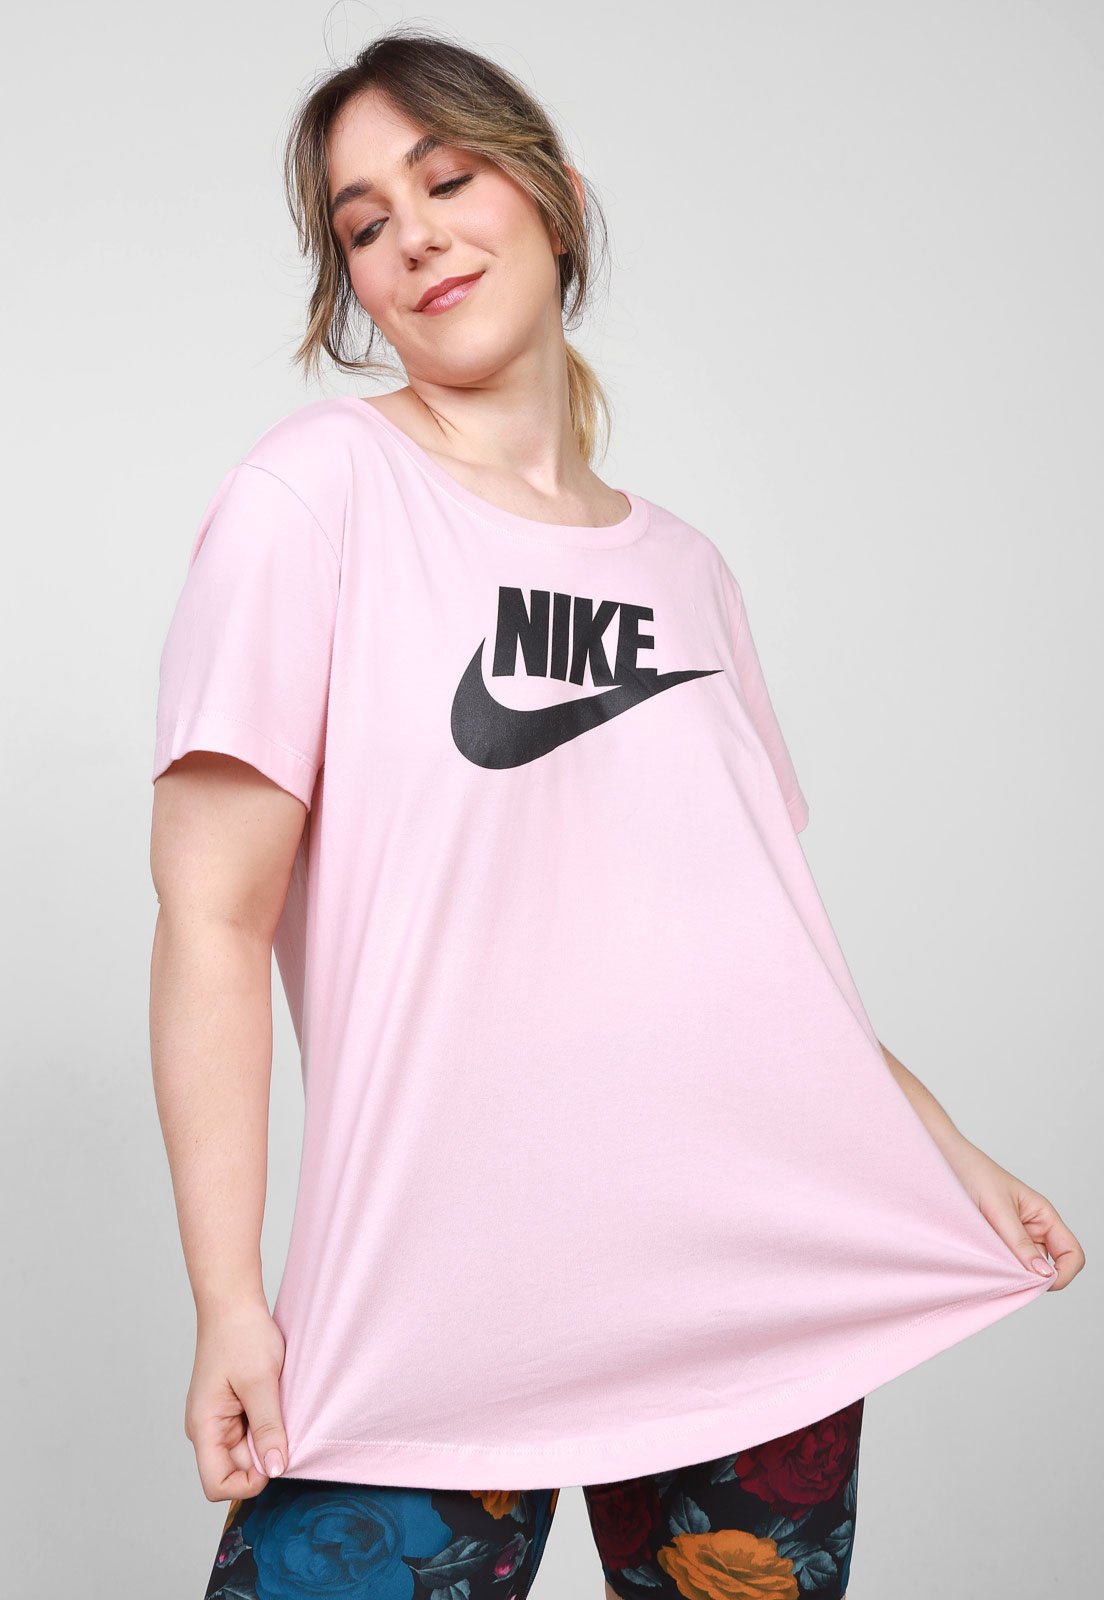 Sportswear Plus Size Pink.